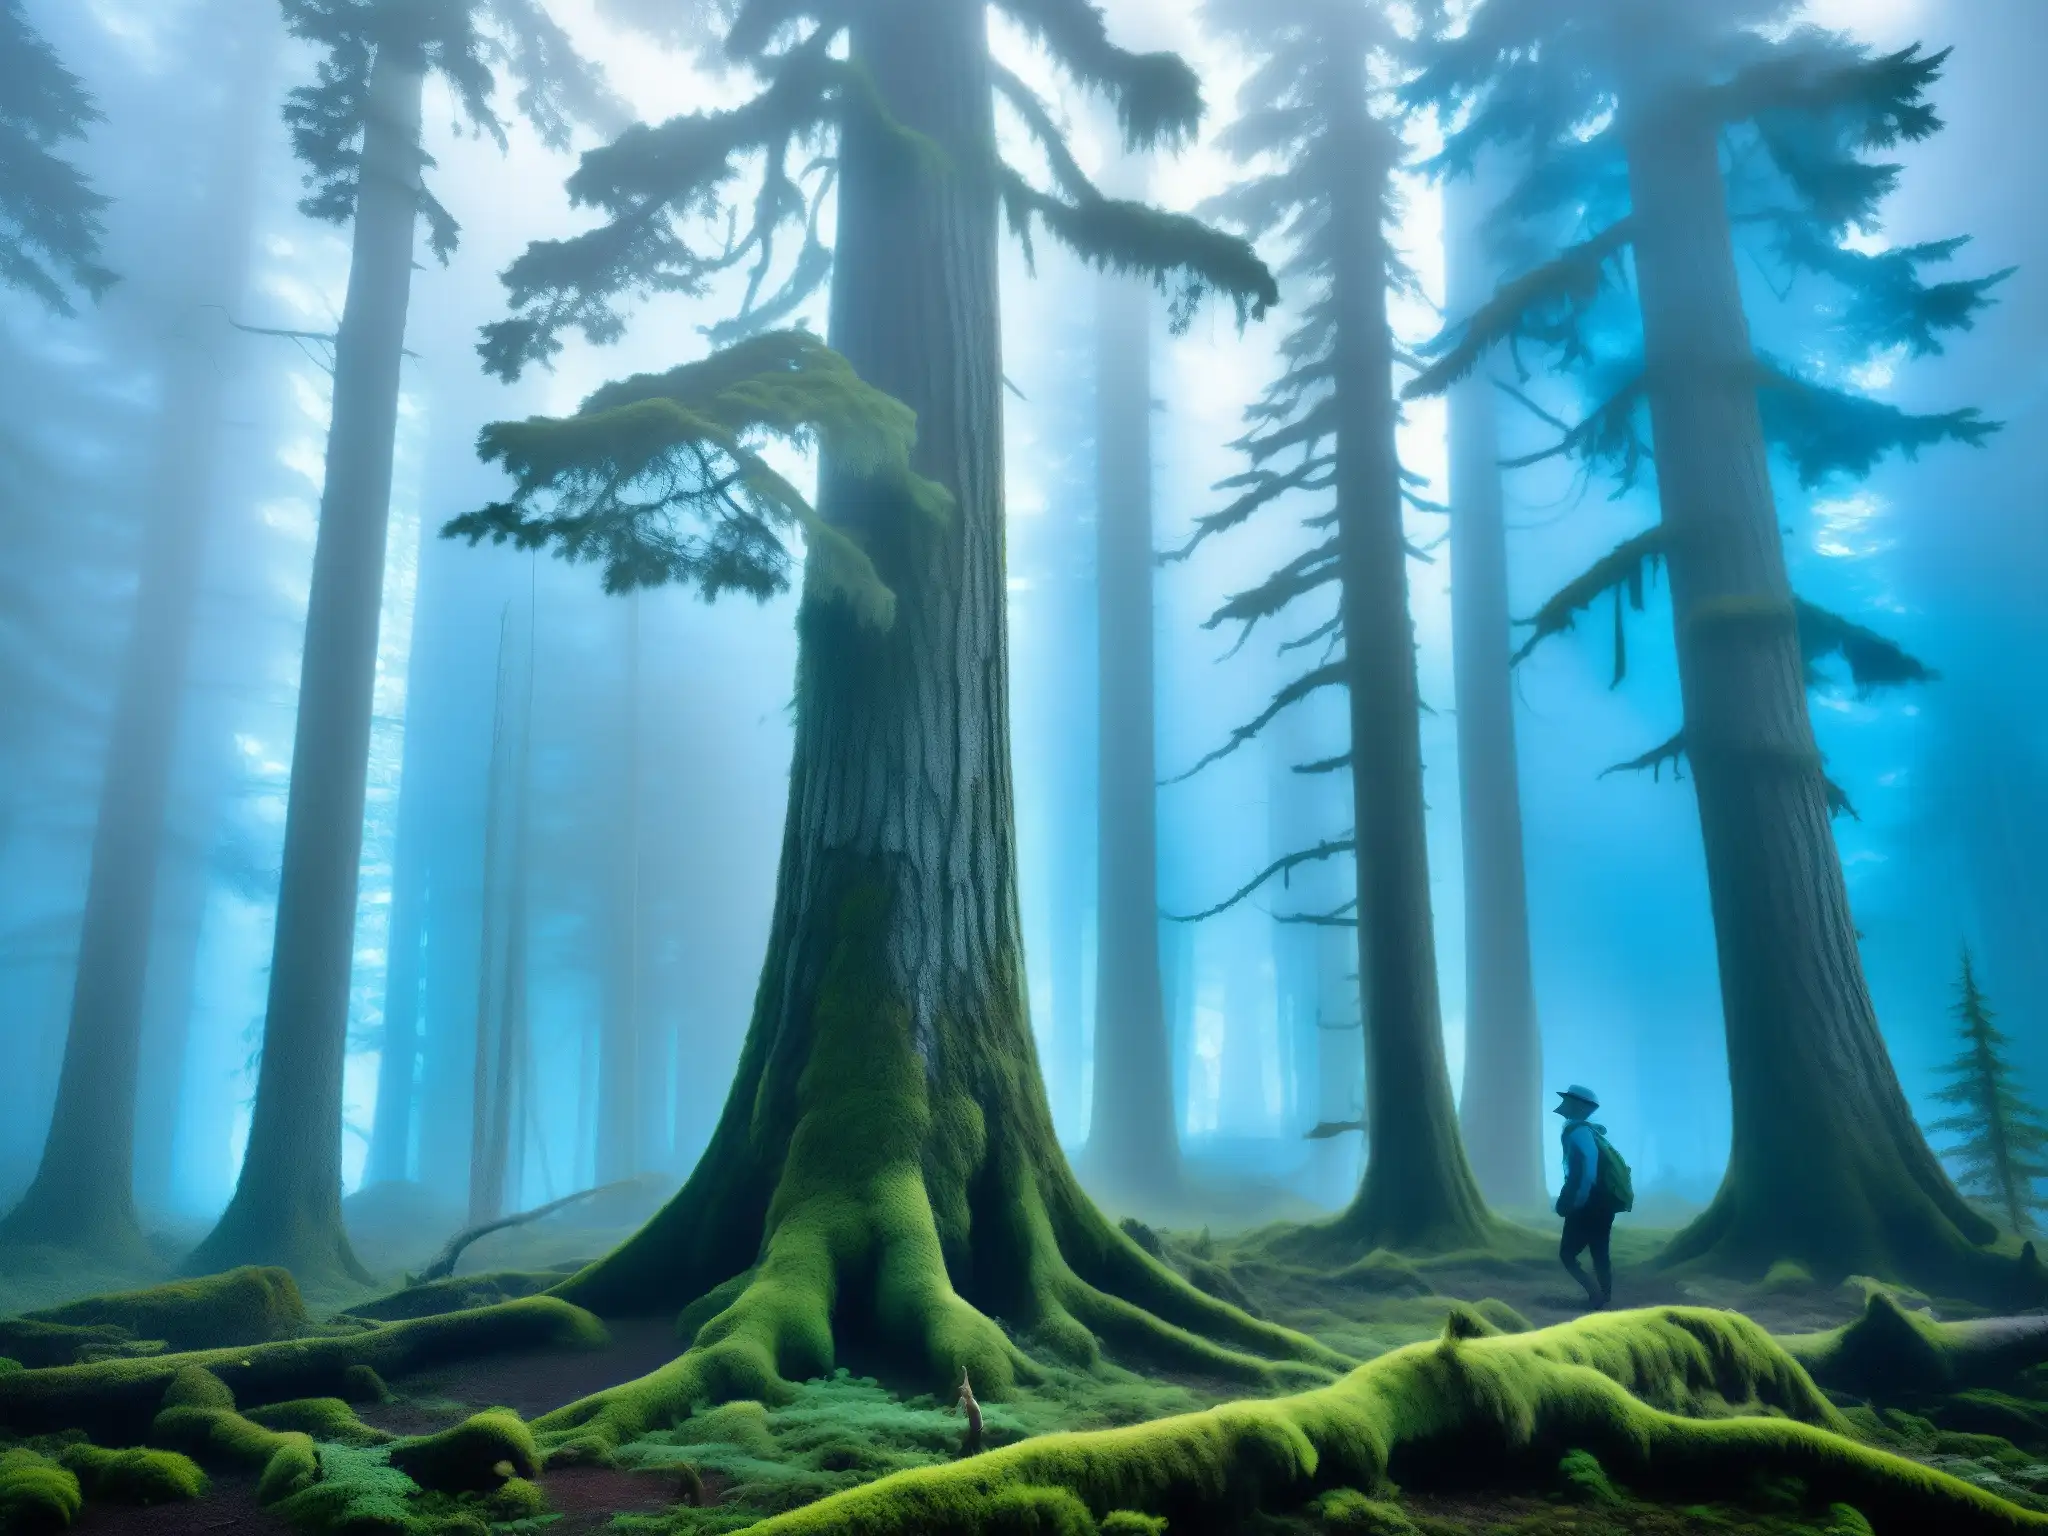 Misterio del Wendigo en Canadá: Bosque neblinoso, árboles antiguos, musgo y luz azul crean atmósfera inquietante